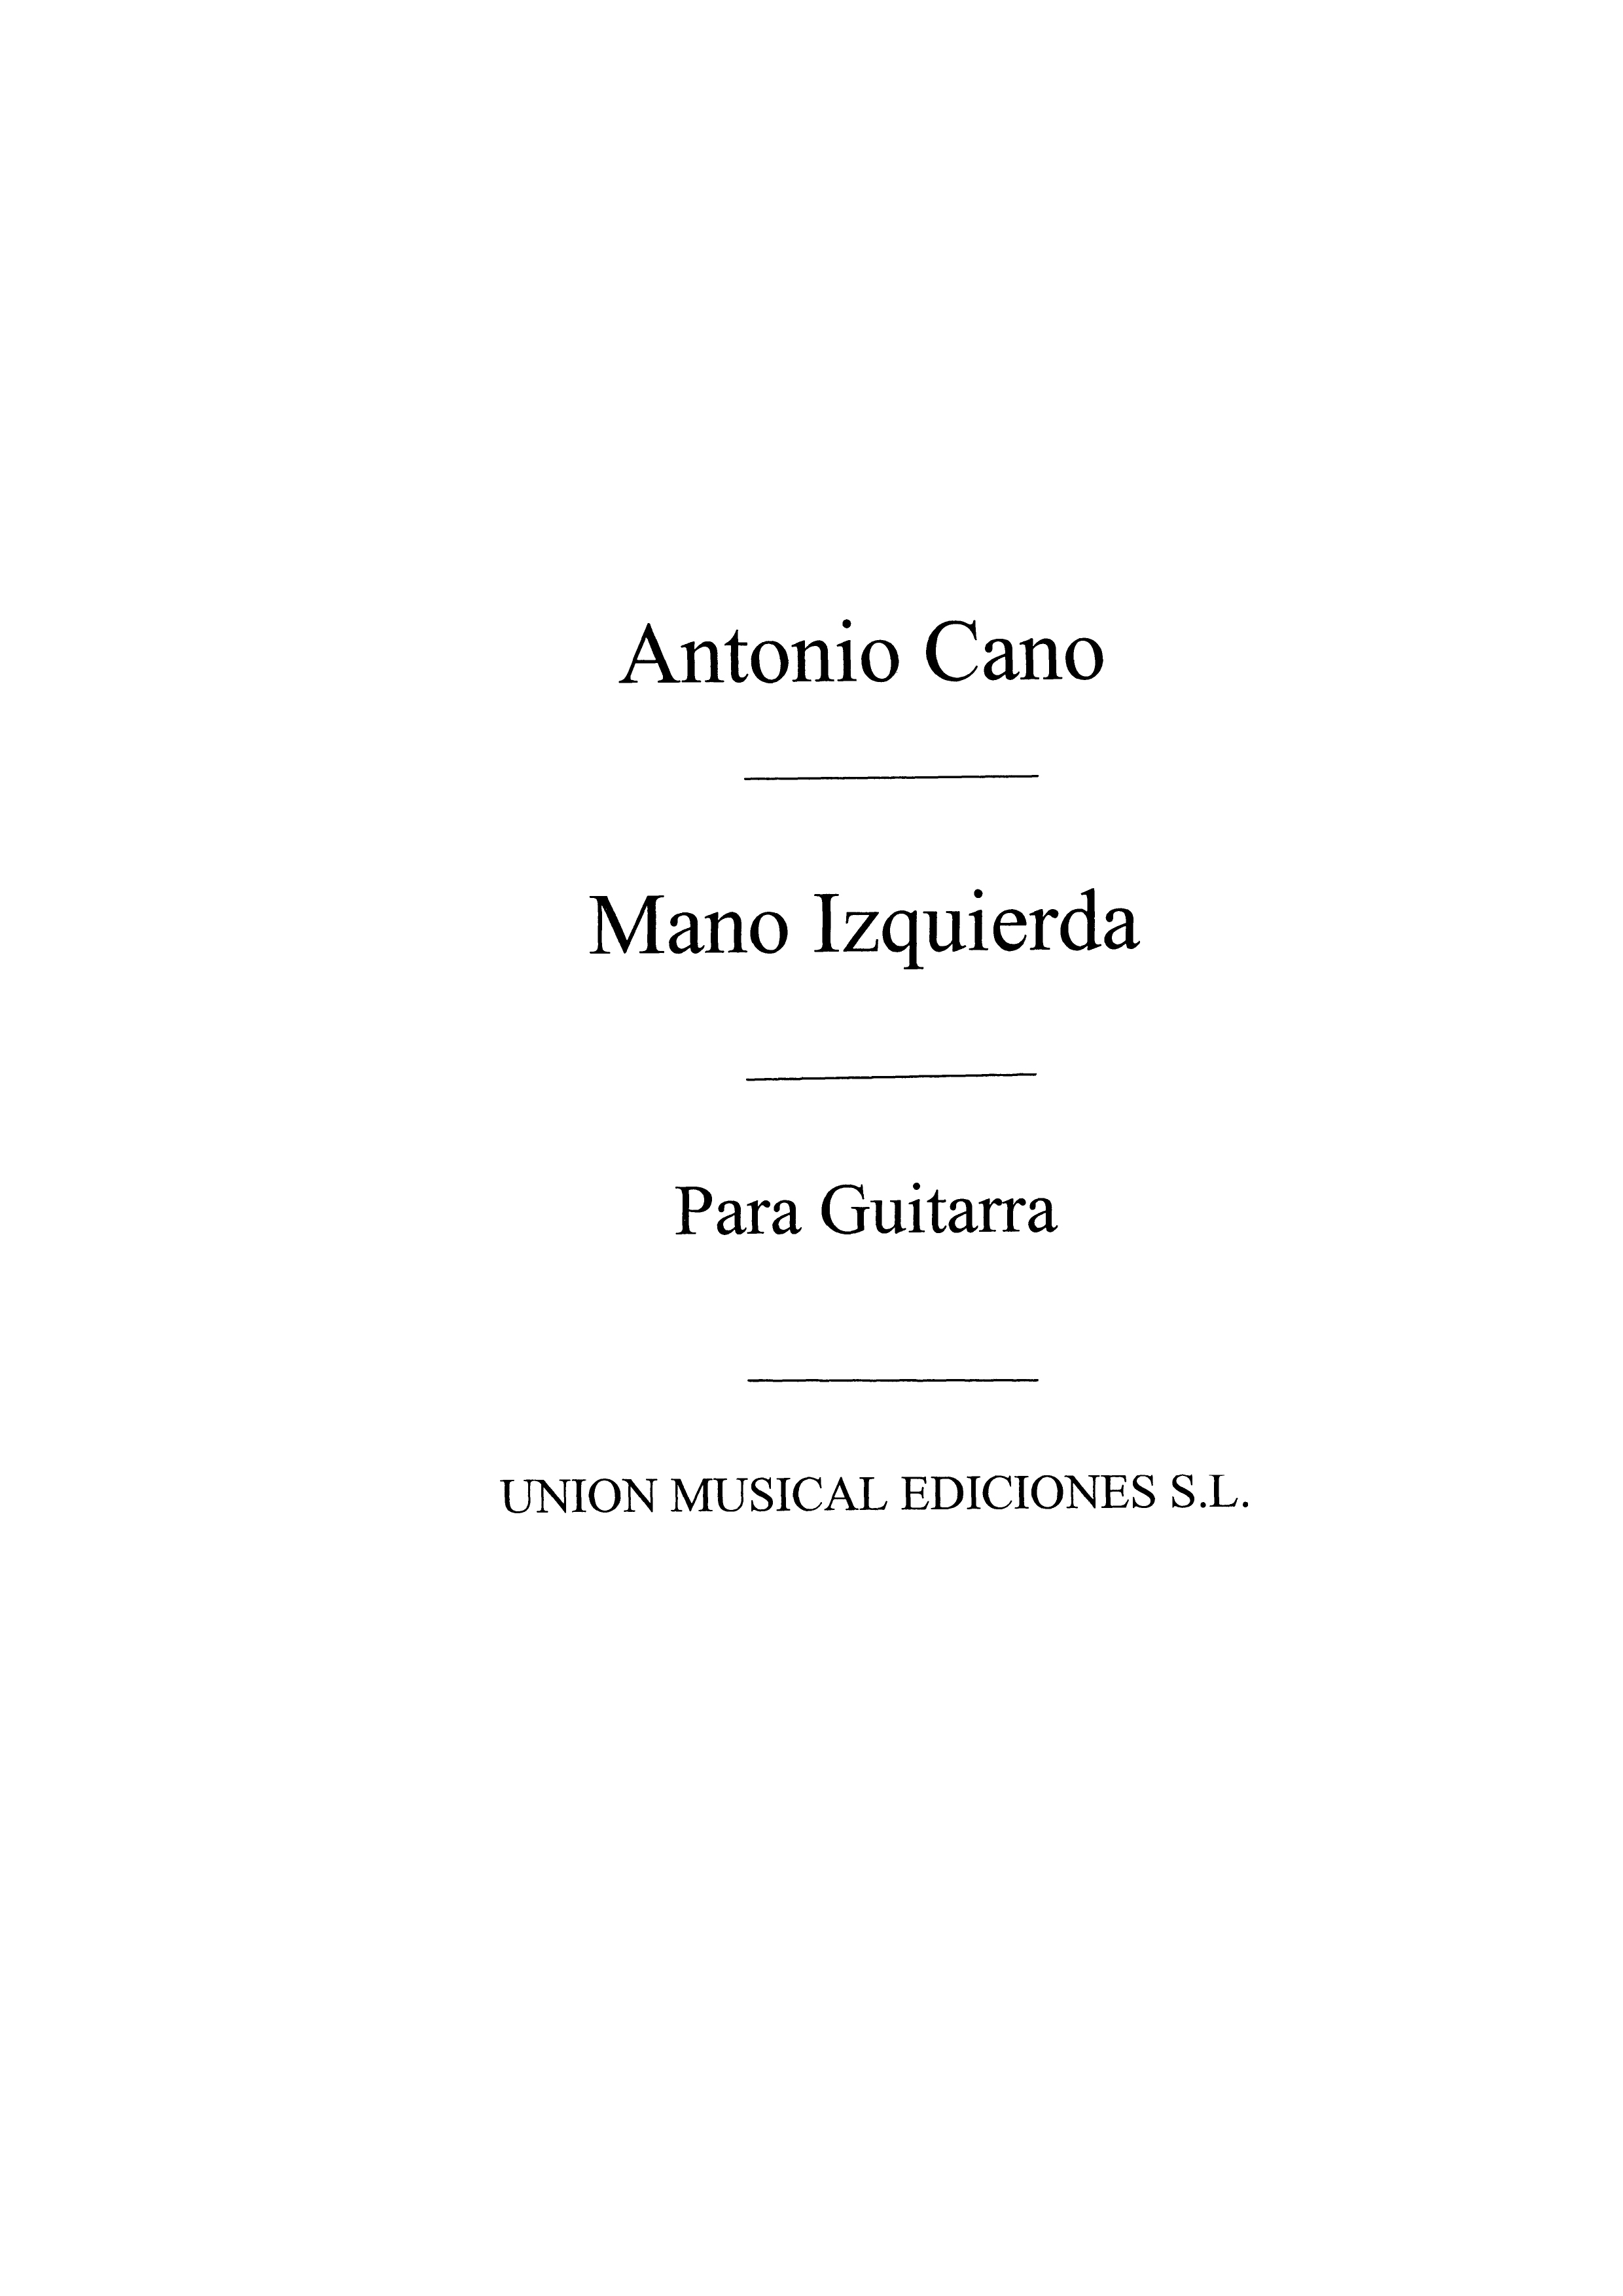 Cano: Doce Estudios para Guitarra Mano Izquierda (Balaguer) for Guitar